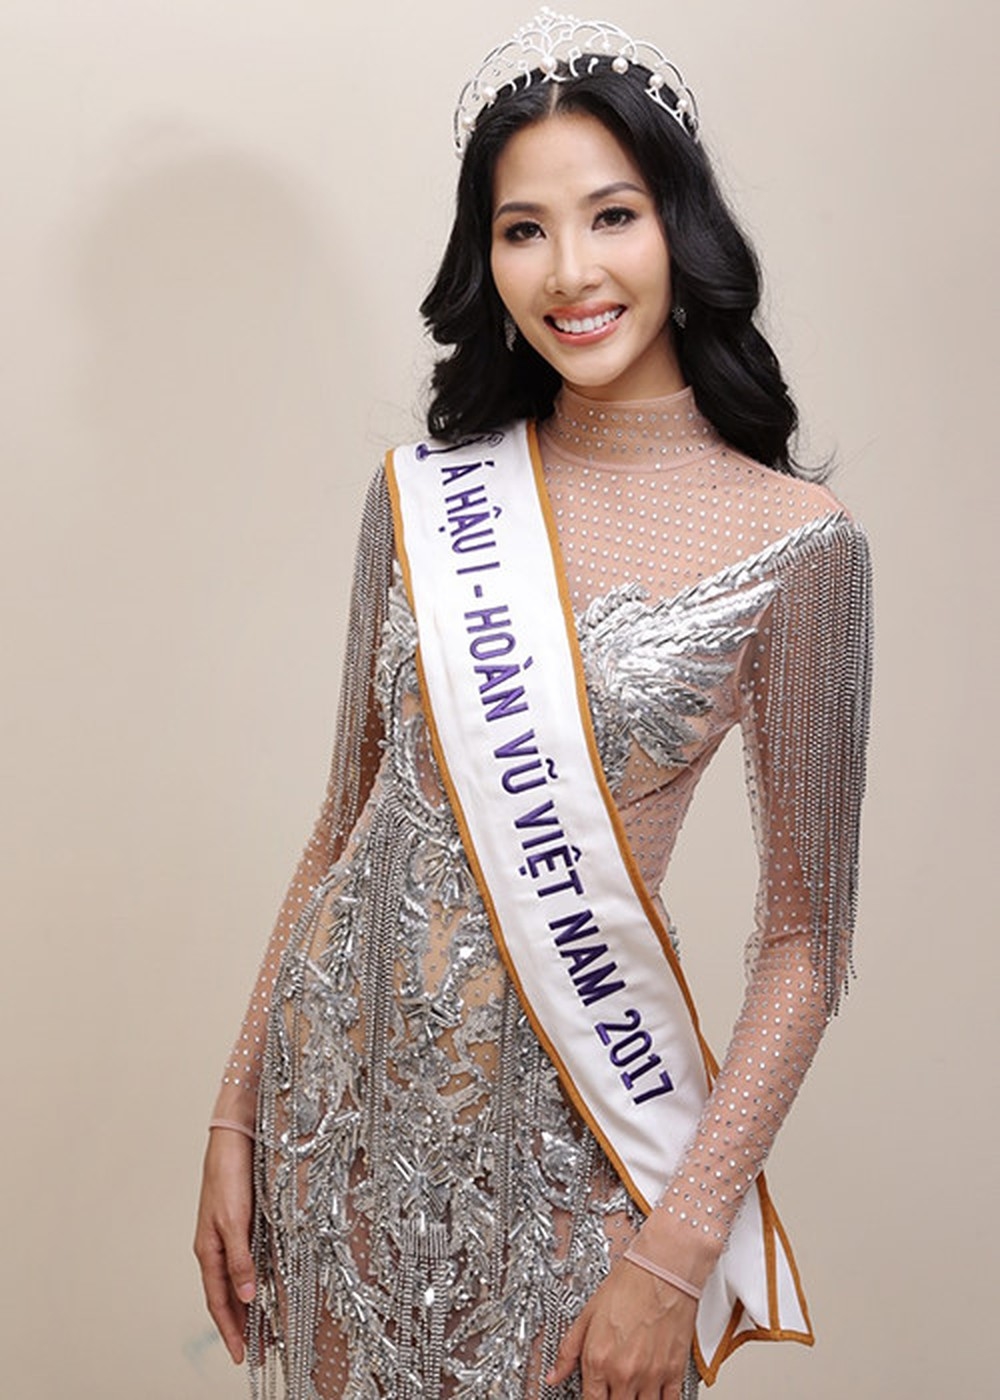 
Đạt danh hiệu Á hậu 1 tại cuộc thi Hoa hậu Hoàn vũ Việt Nam 2017, Hoàng Thùy chính là cái tên dự đoán sẽ tiếp bước H'Hen Niê chinh chiến tại đấu trường sắc đẹp quốc tế vào năm sau.